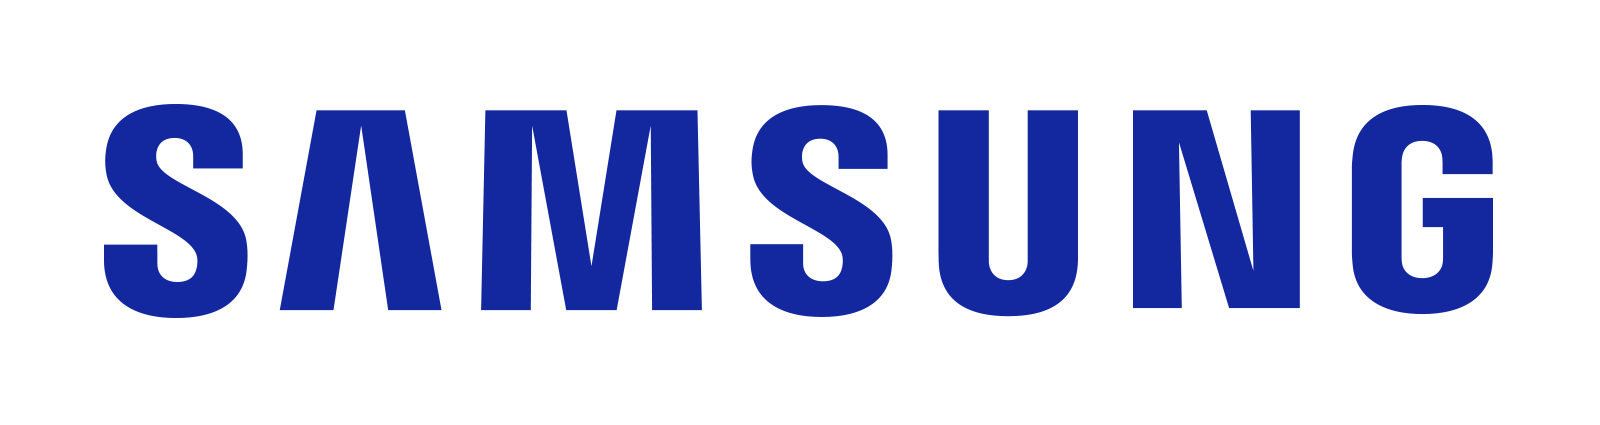 SCM Coordinator needed for Samsung!